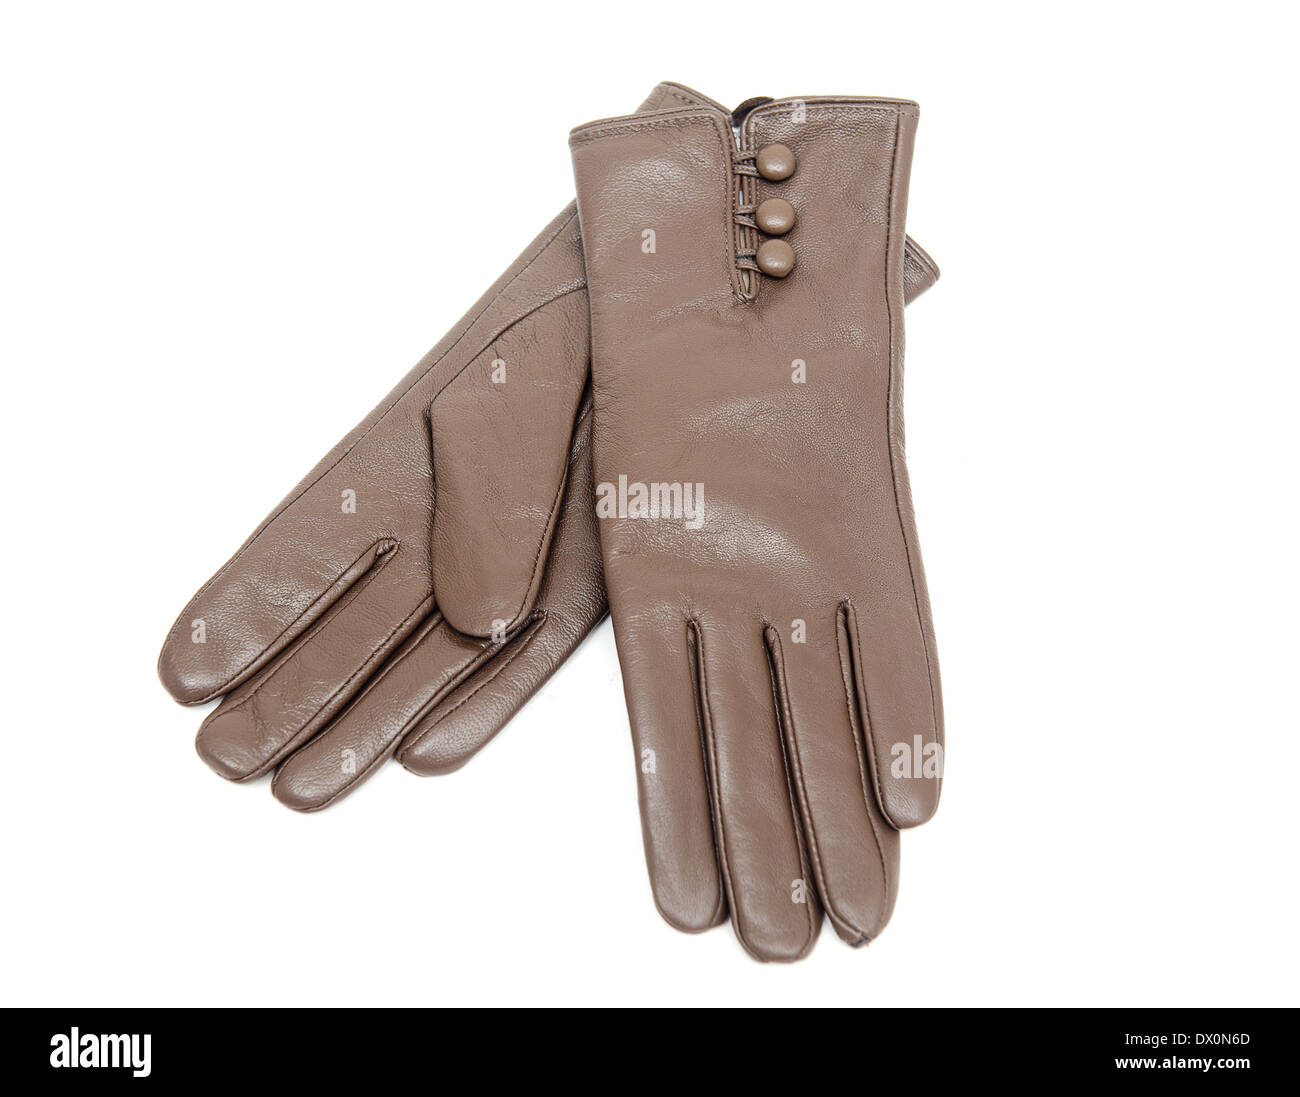 Pour les femmes, les gants de cuir isolé sur fond blanc Banque D'Images